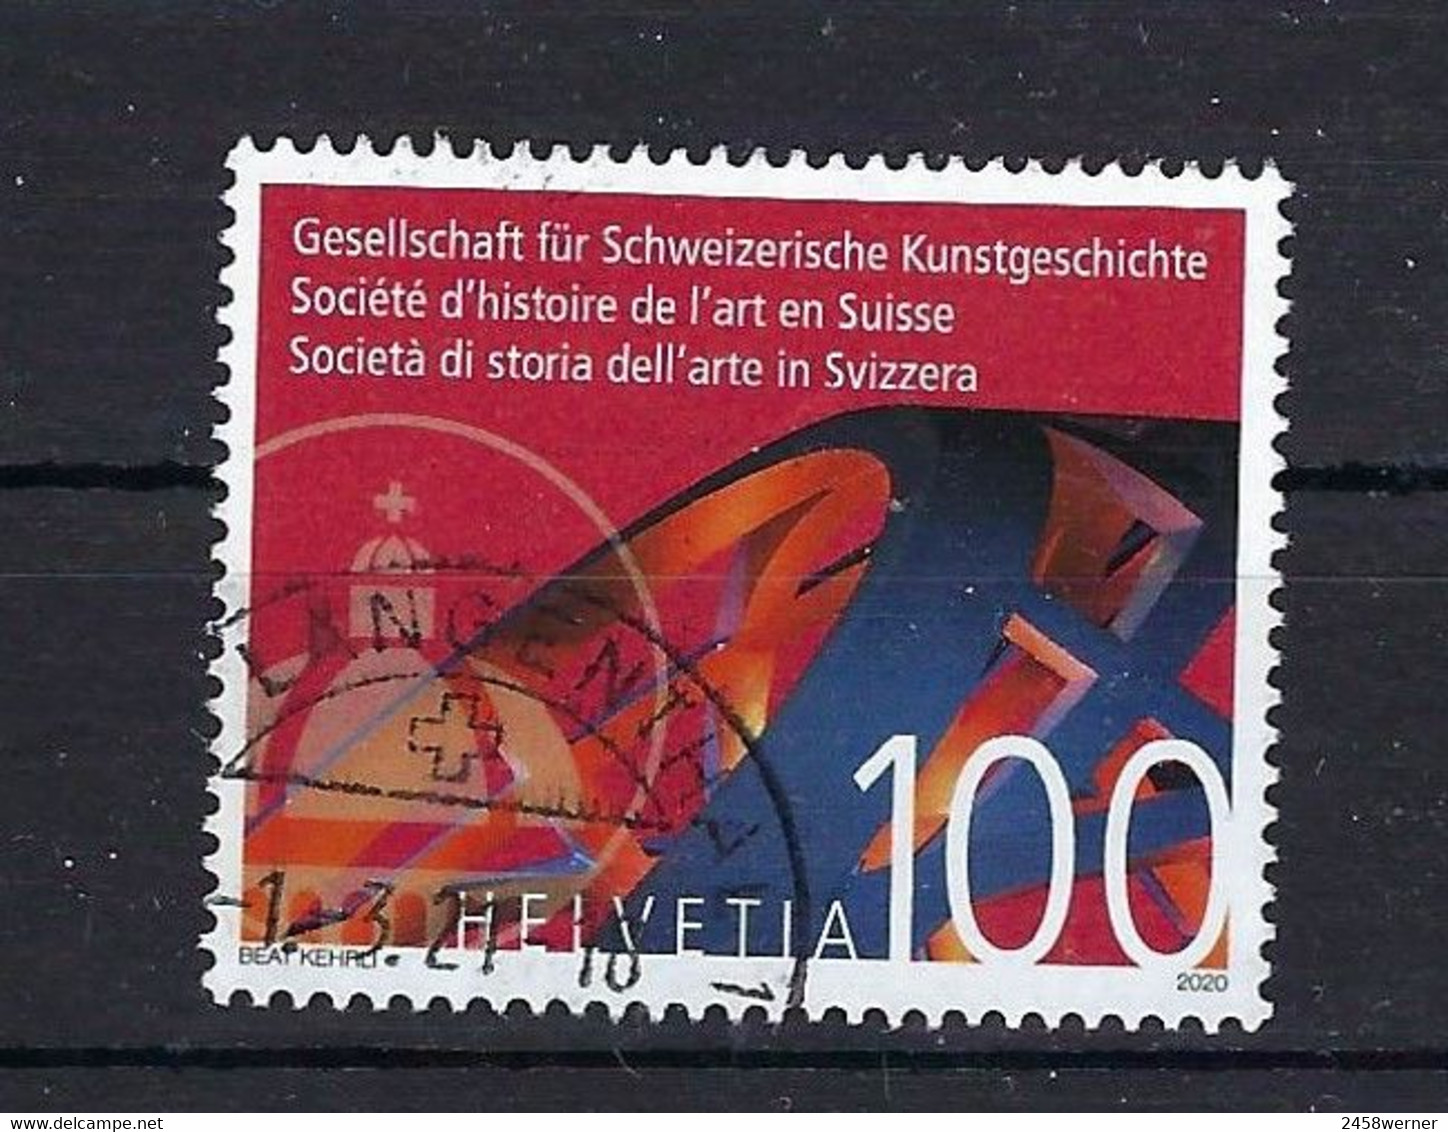 Schweiz 2020 Nr. 2655, 140 Jahre Gesellschaft Für Schweizerische Kunstgeschichte Gestempelt Used, Suisse Switzerland - Usati